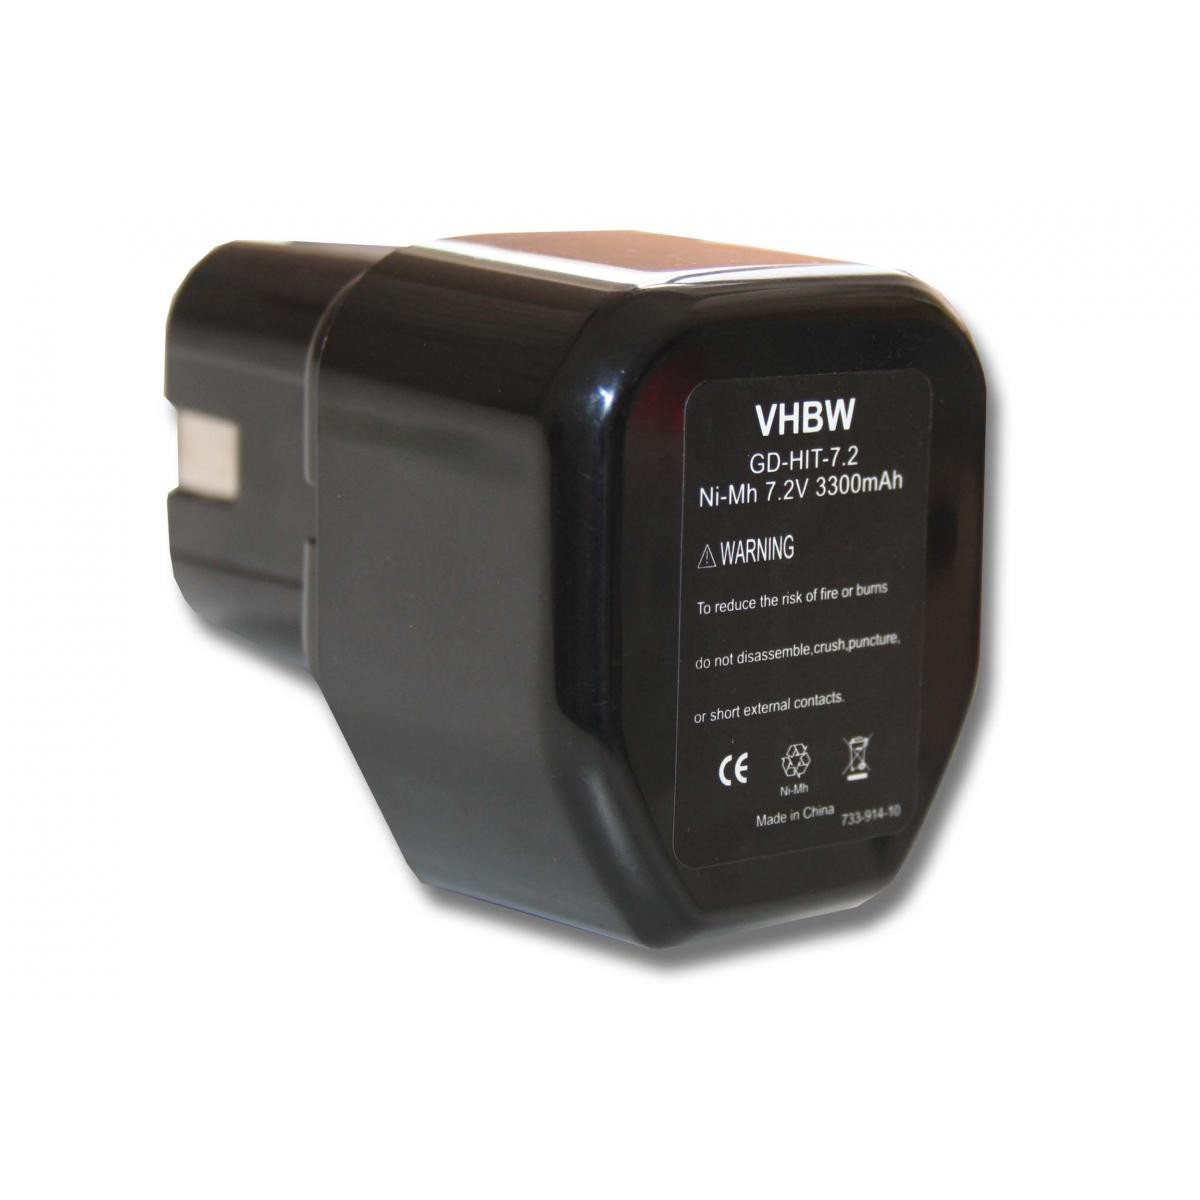 Vhbw - vhbw Batterie compatible avec Hitachi D 10DC, D 10dB, D10DC, D10dB, DN 10DAT, DN 10DSA, DN 10DVA, DN 6DM outil électrique (3300mAh NiMH 7,2V) - Clouterie